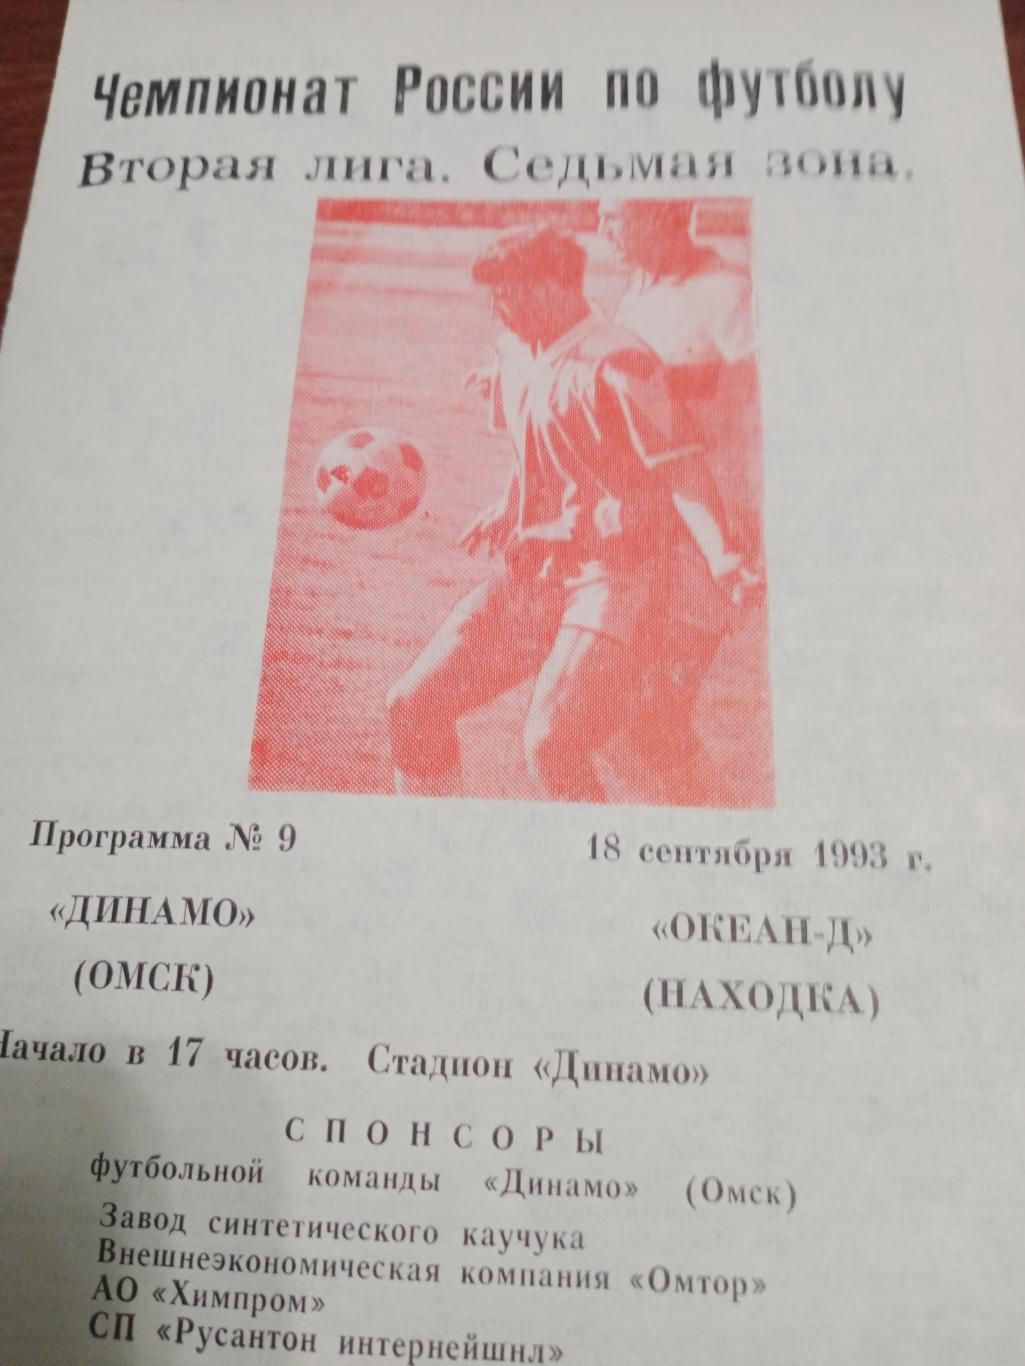 Динамо Омск - Океан-Д Находка - 18.09.93.